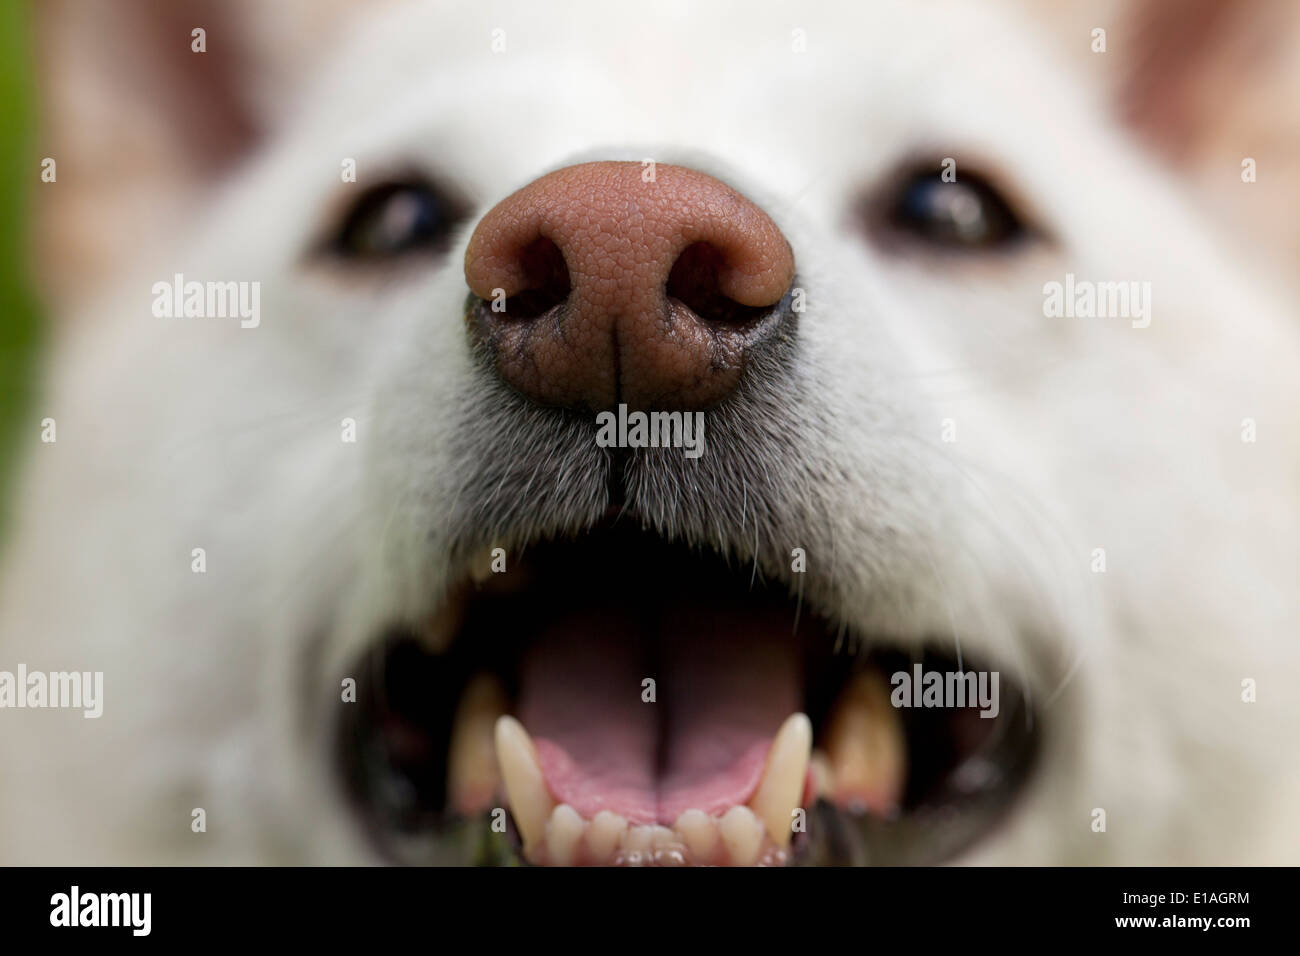 Closeup of a dog's snout Stock Photo